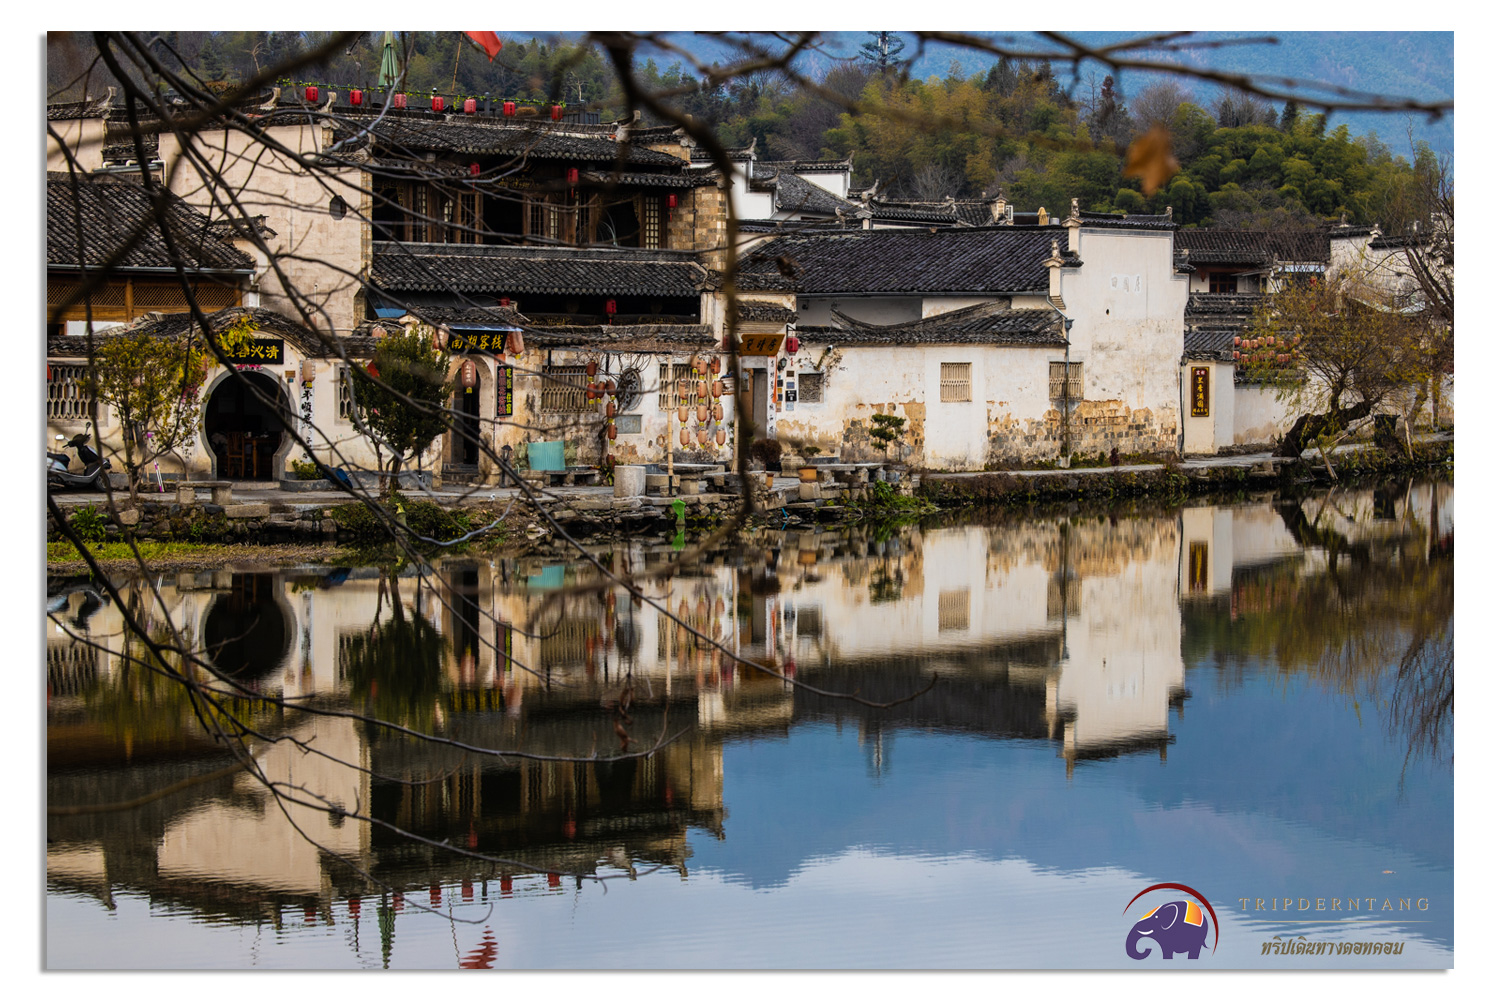 หวงซาน หมู่บ้านหงชุน